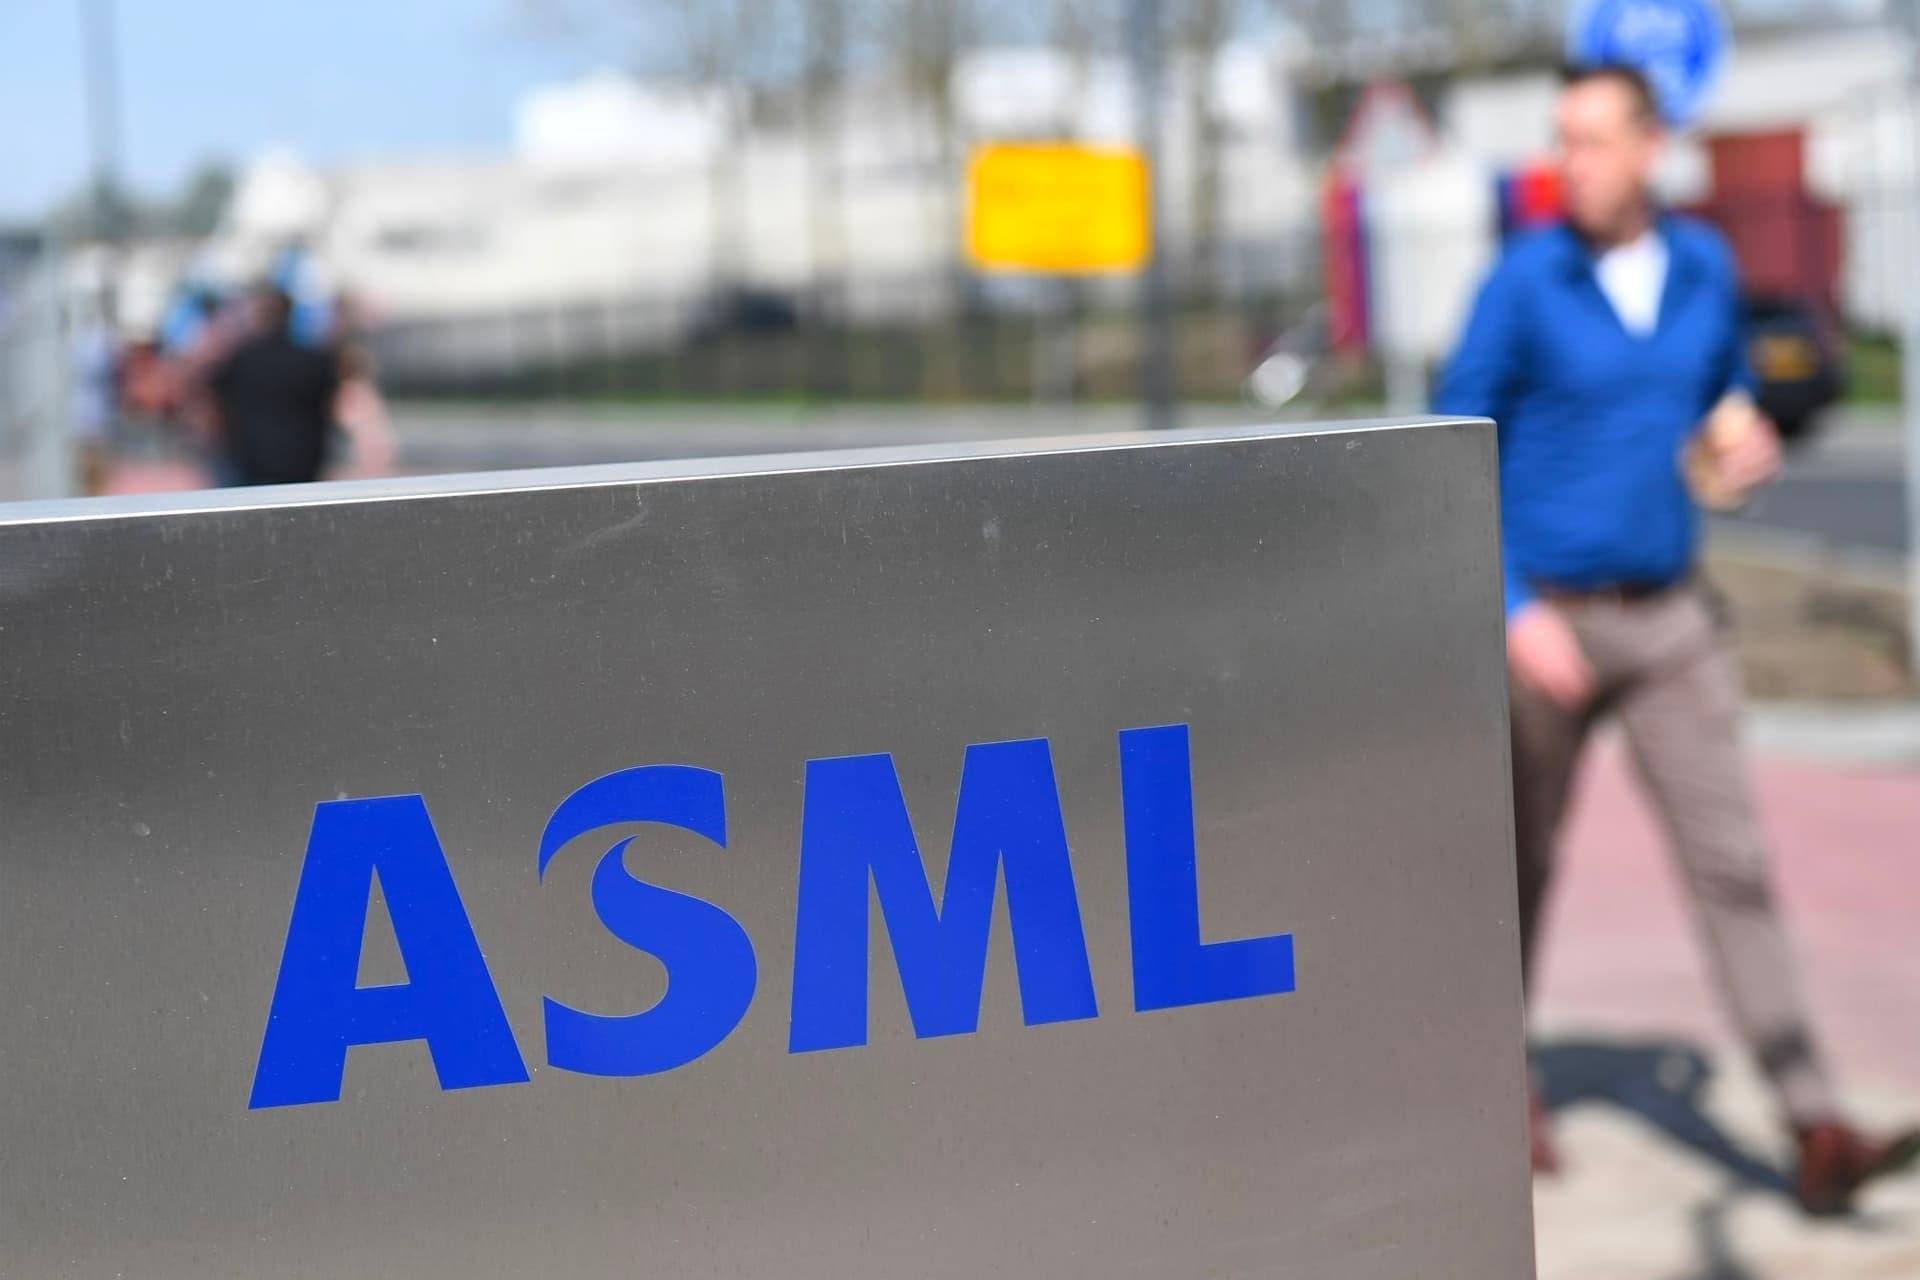 لوگو شرکت ASML در کنار یک مرد با لباس آبی